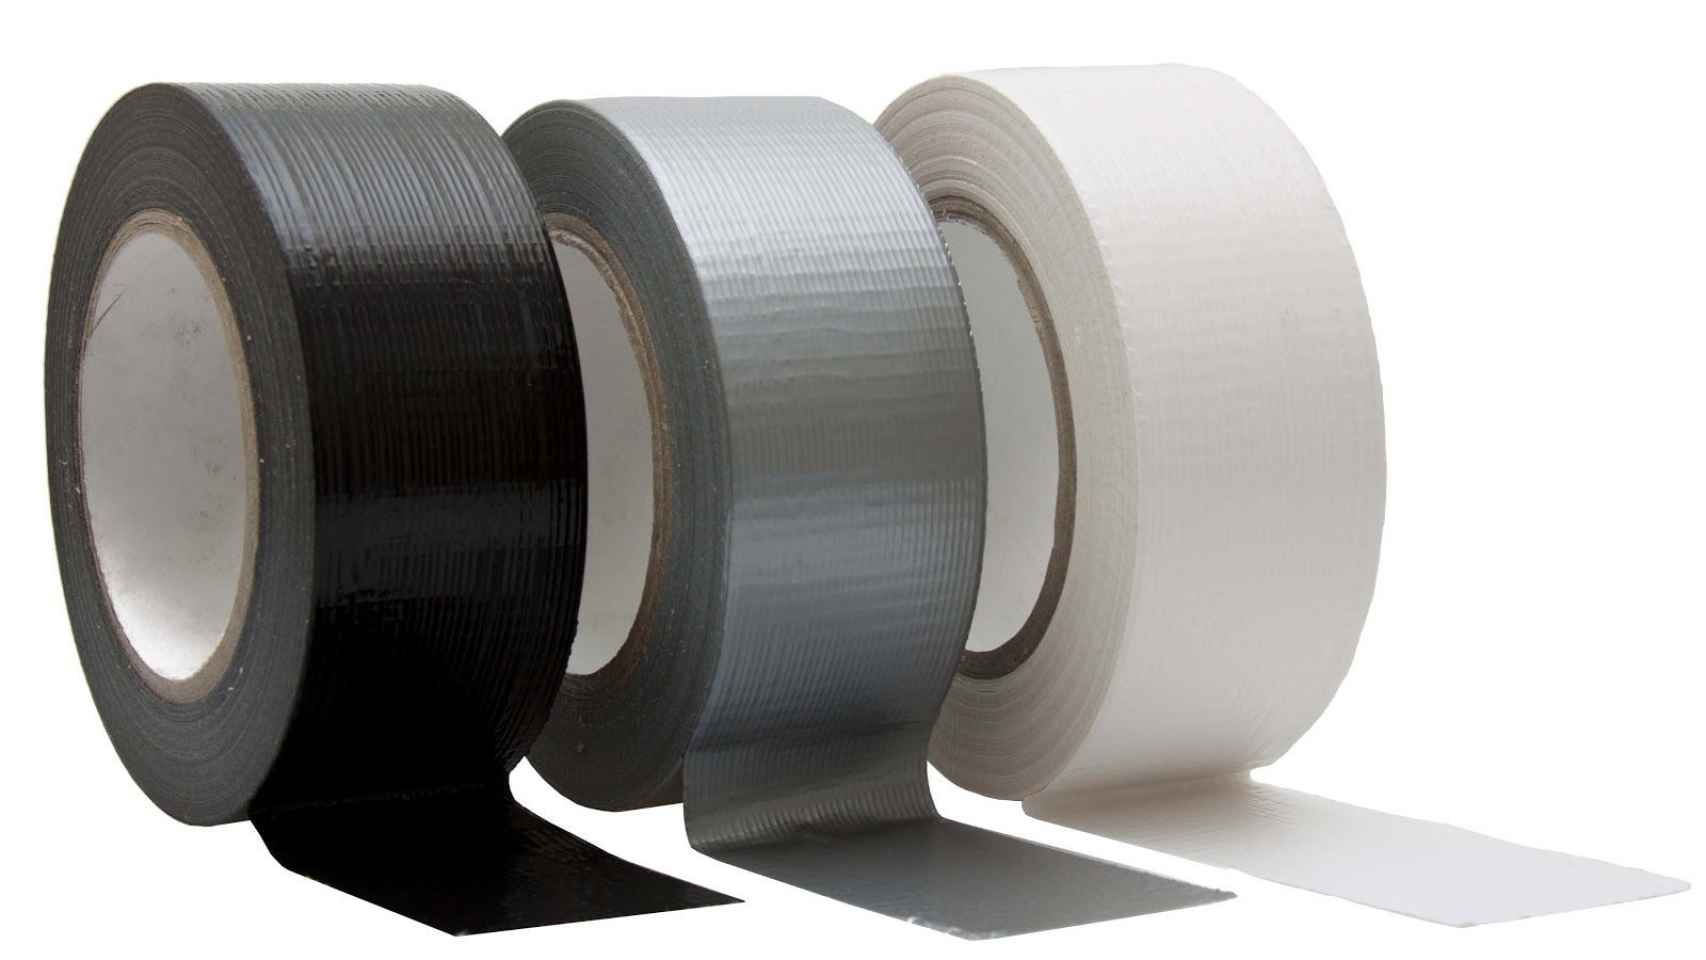 Una imagen de cinta adhesiva